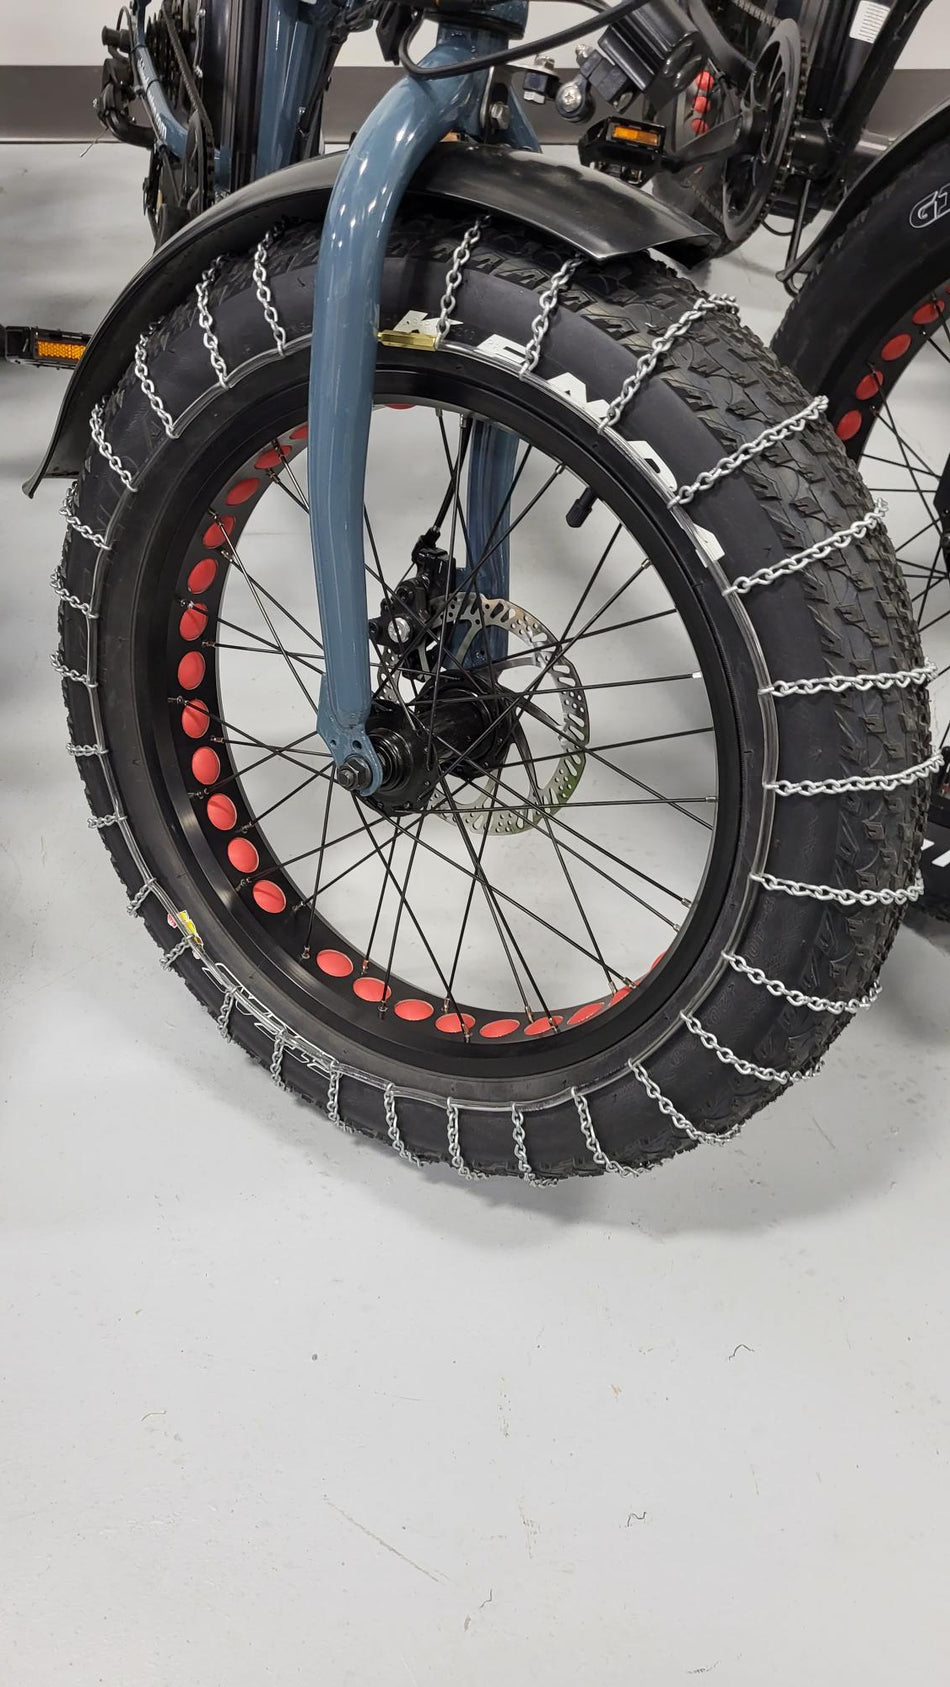 Electric bike tires bike tire chains.